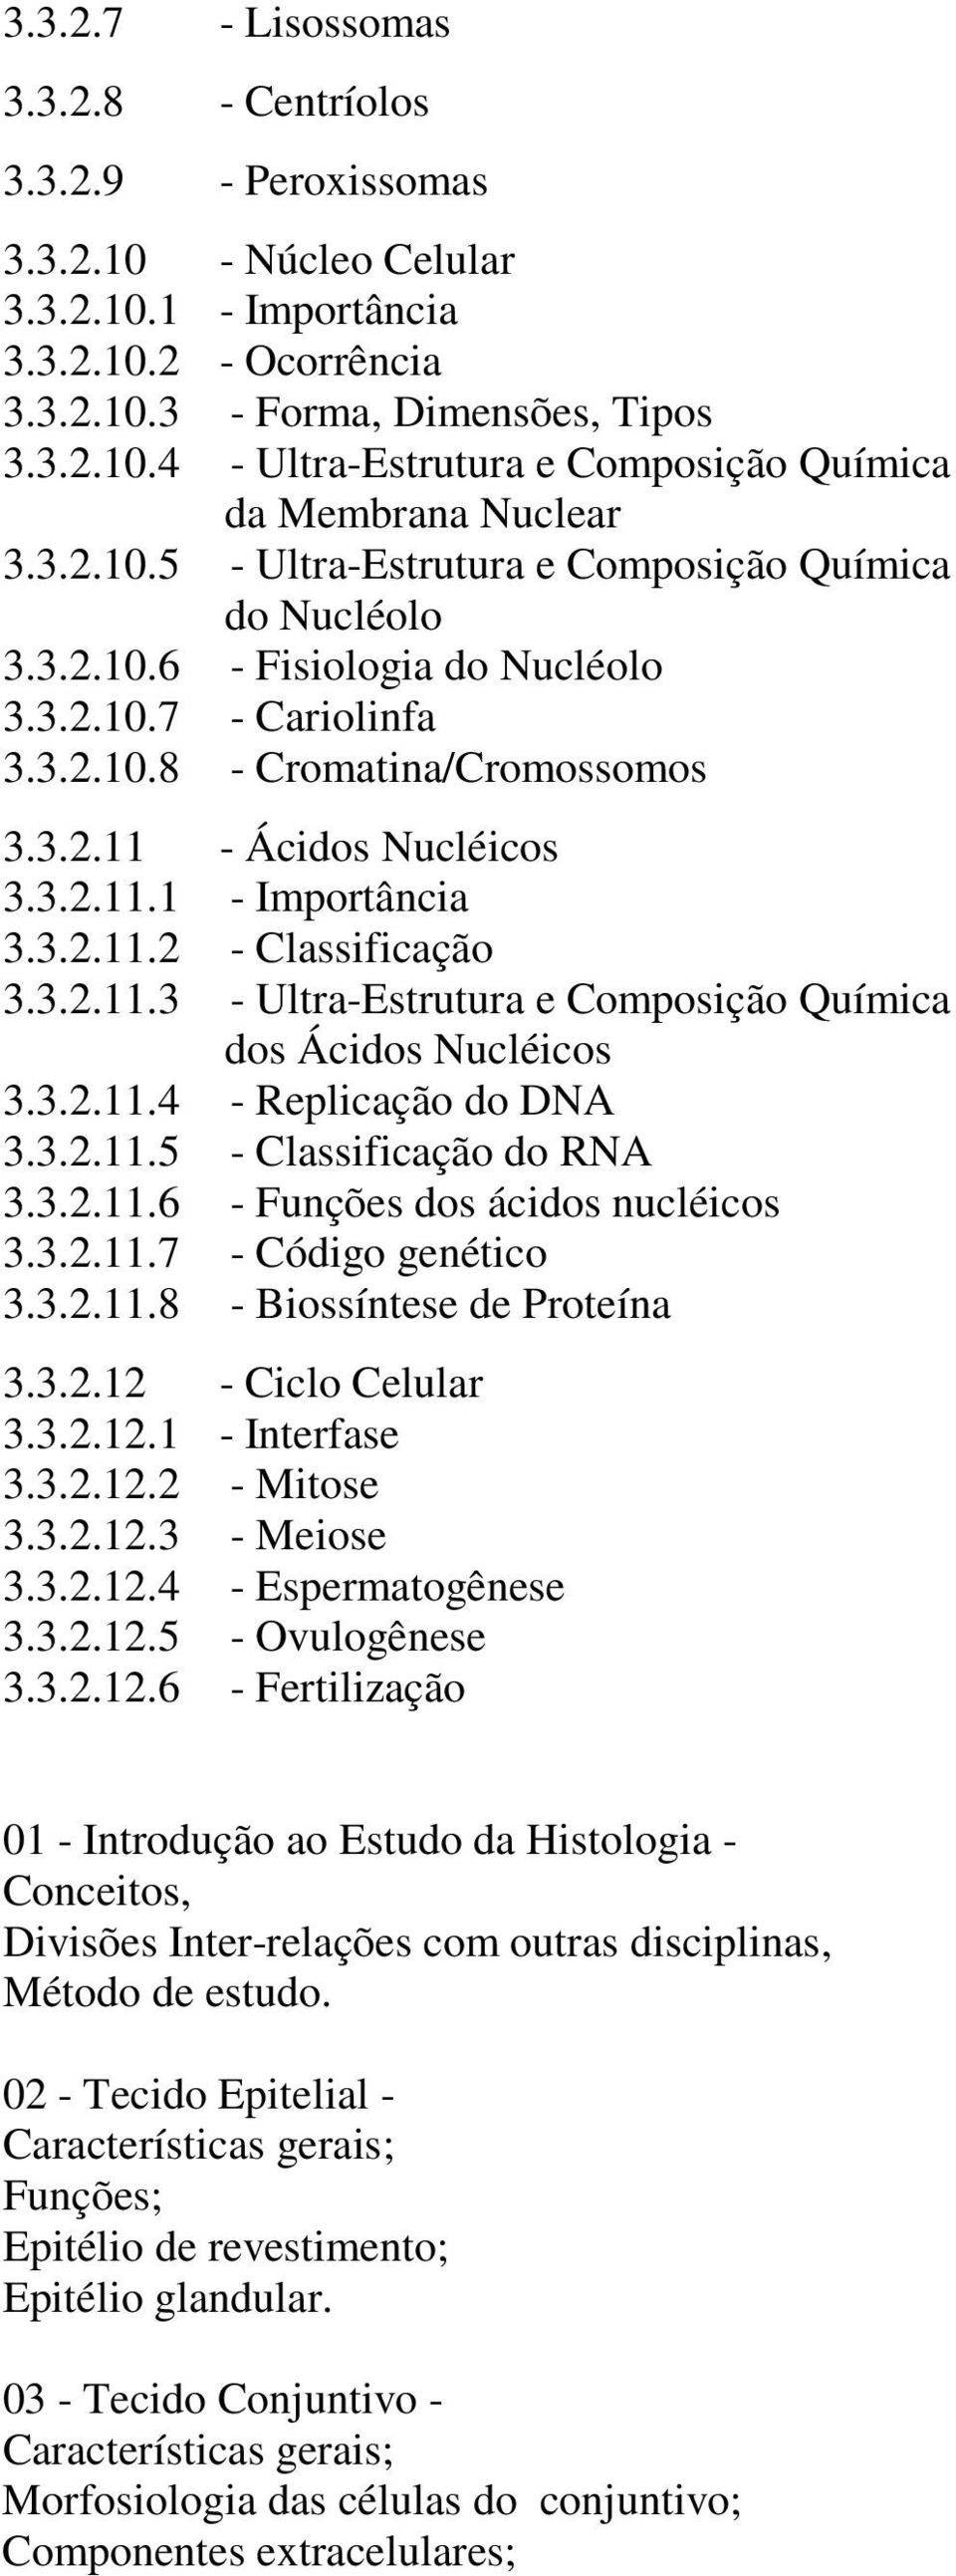 3.2.11.2 - Classificação 3.3.2.11.3 - Ultra-Estrutura e Composição Química dos Ácidos Nucléicos 3.3.2.11.4 - Replicação do DNA 3.3.2.11.5 - Classificação do RNA 3.3.2.11.6 - Funções dos ácidos nucléicos 3.